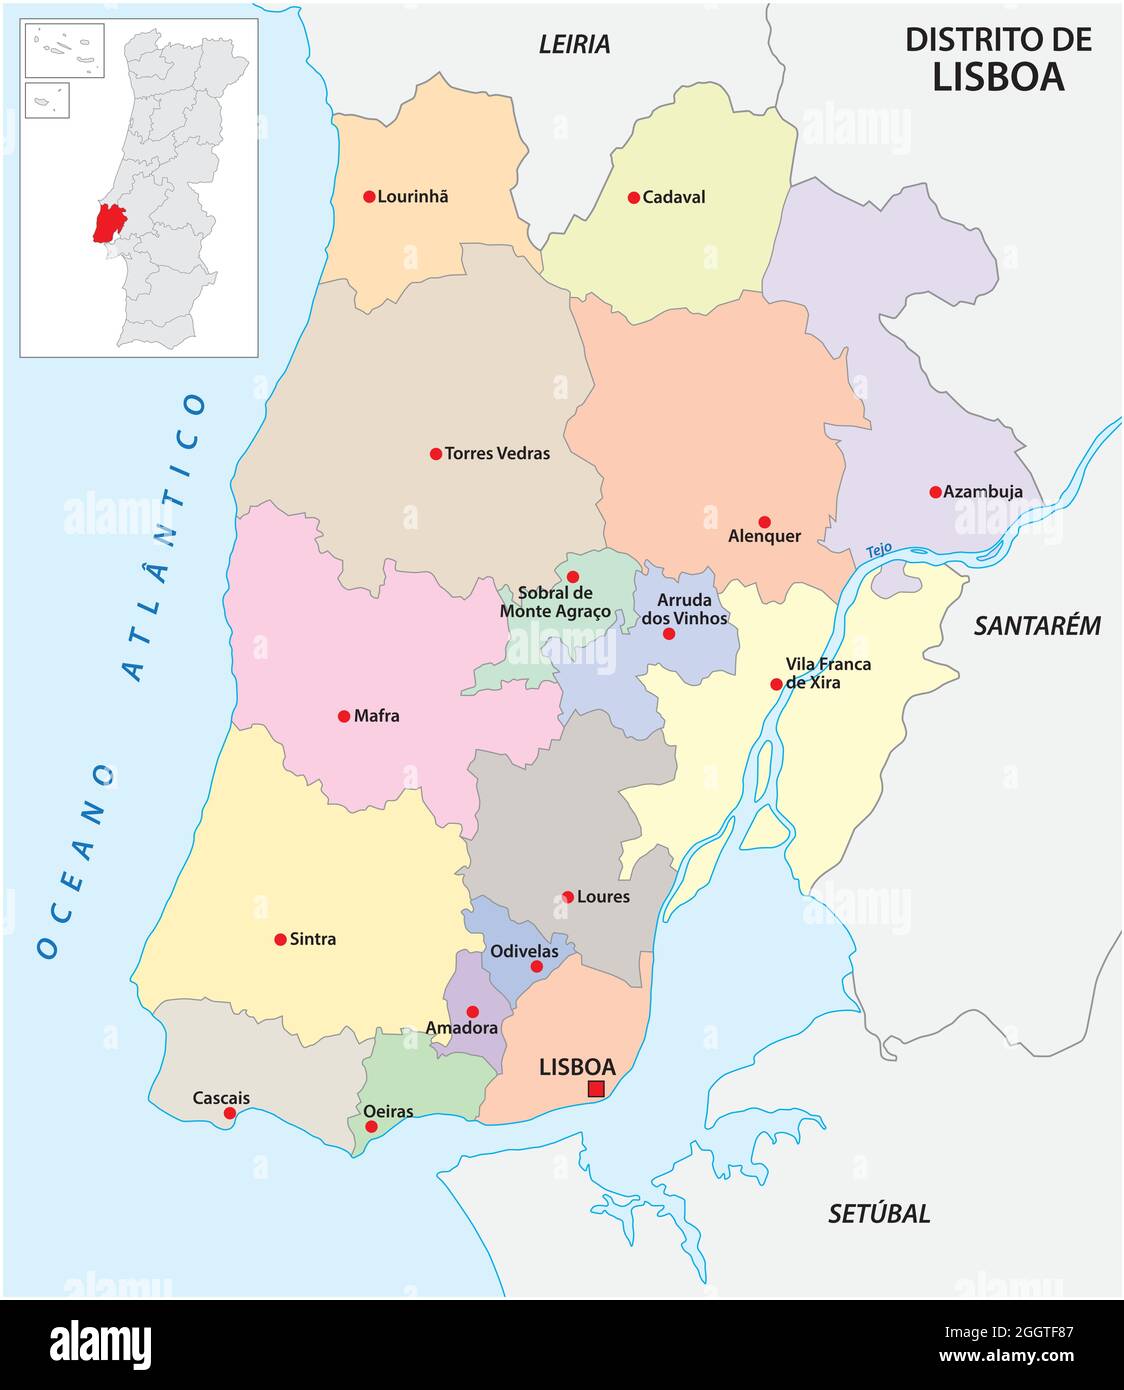 Mappa vettoriale amministrativa del distretto portoghese di Lisbona Illustrazione Vettoriale